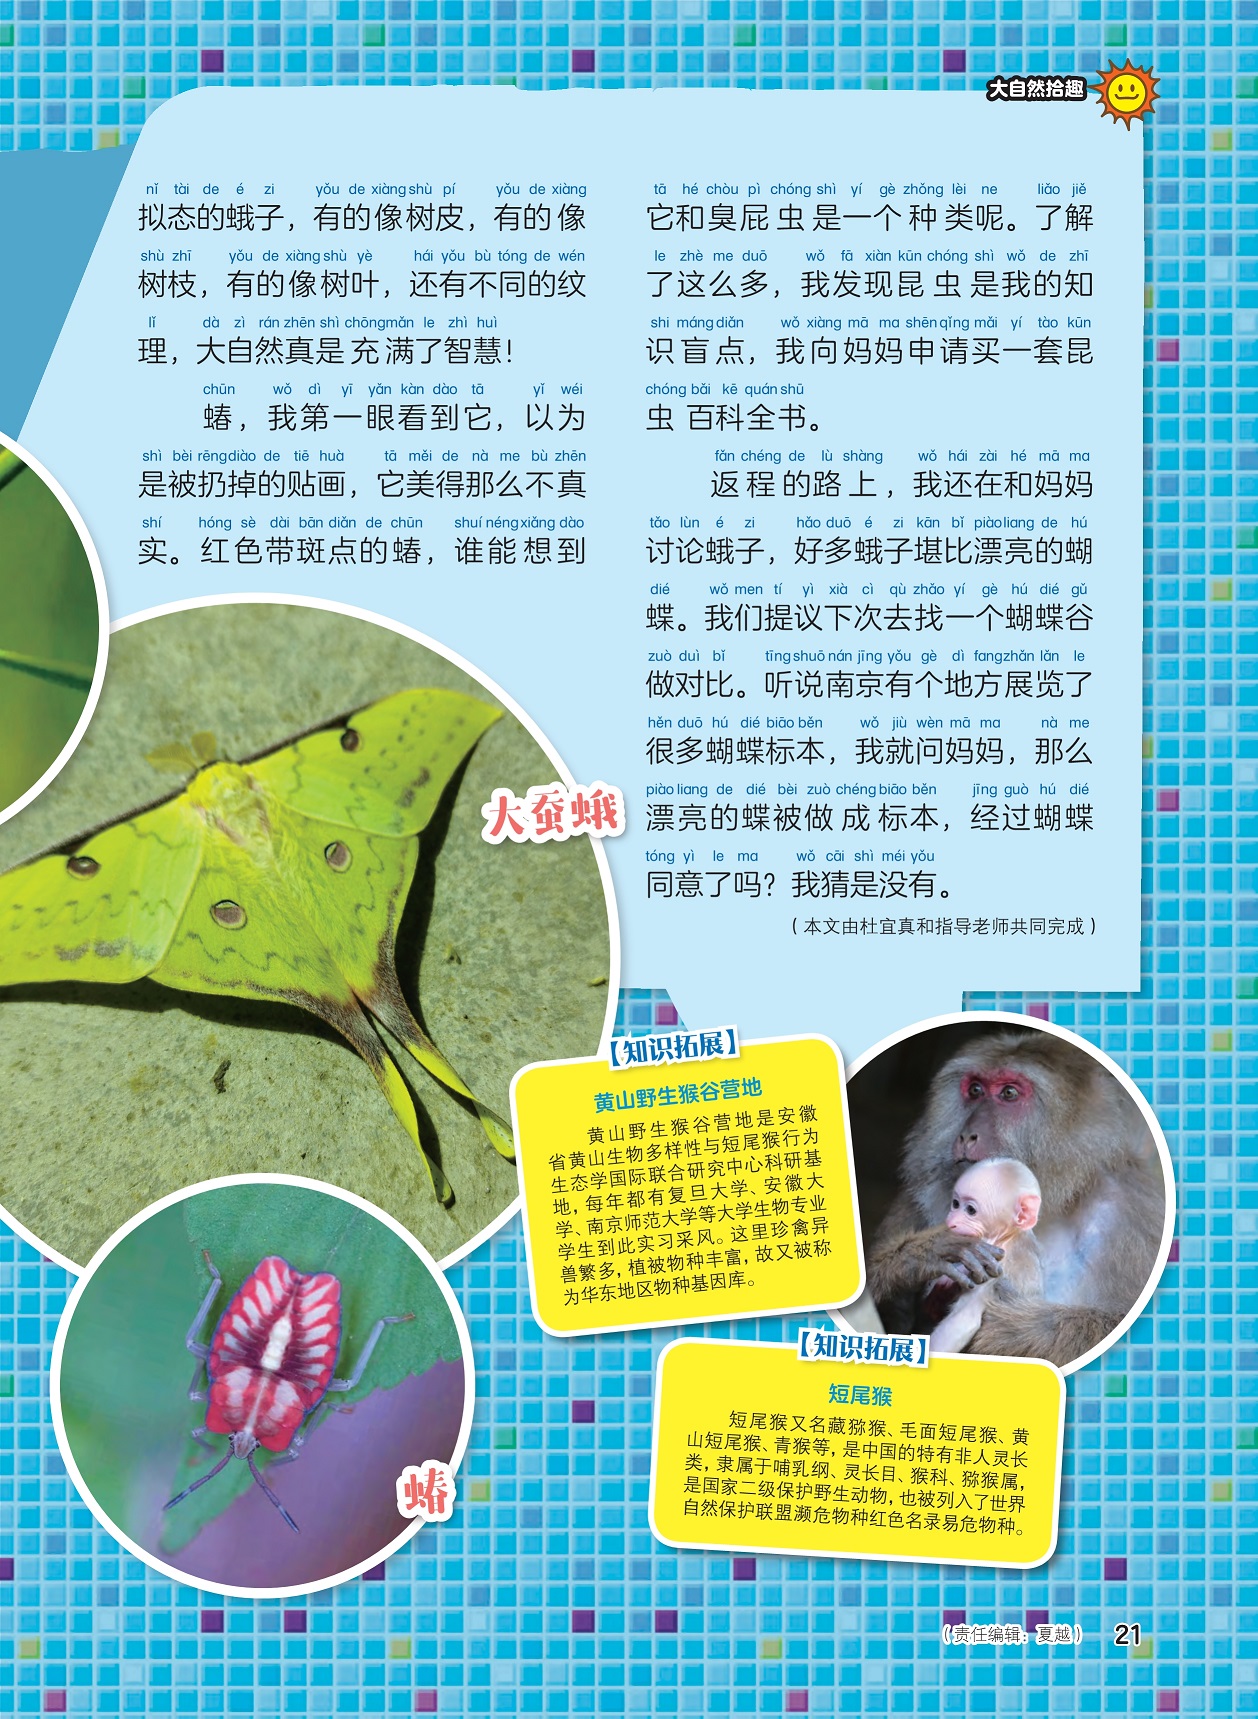 昆虫是知识盲点,南京展览很多蝴蝶标本